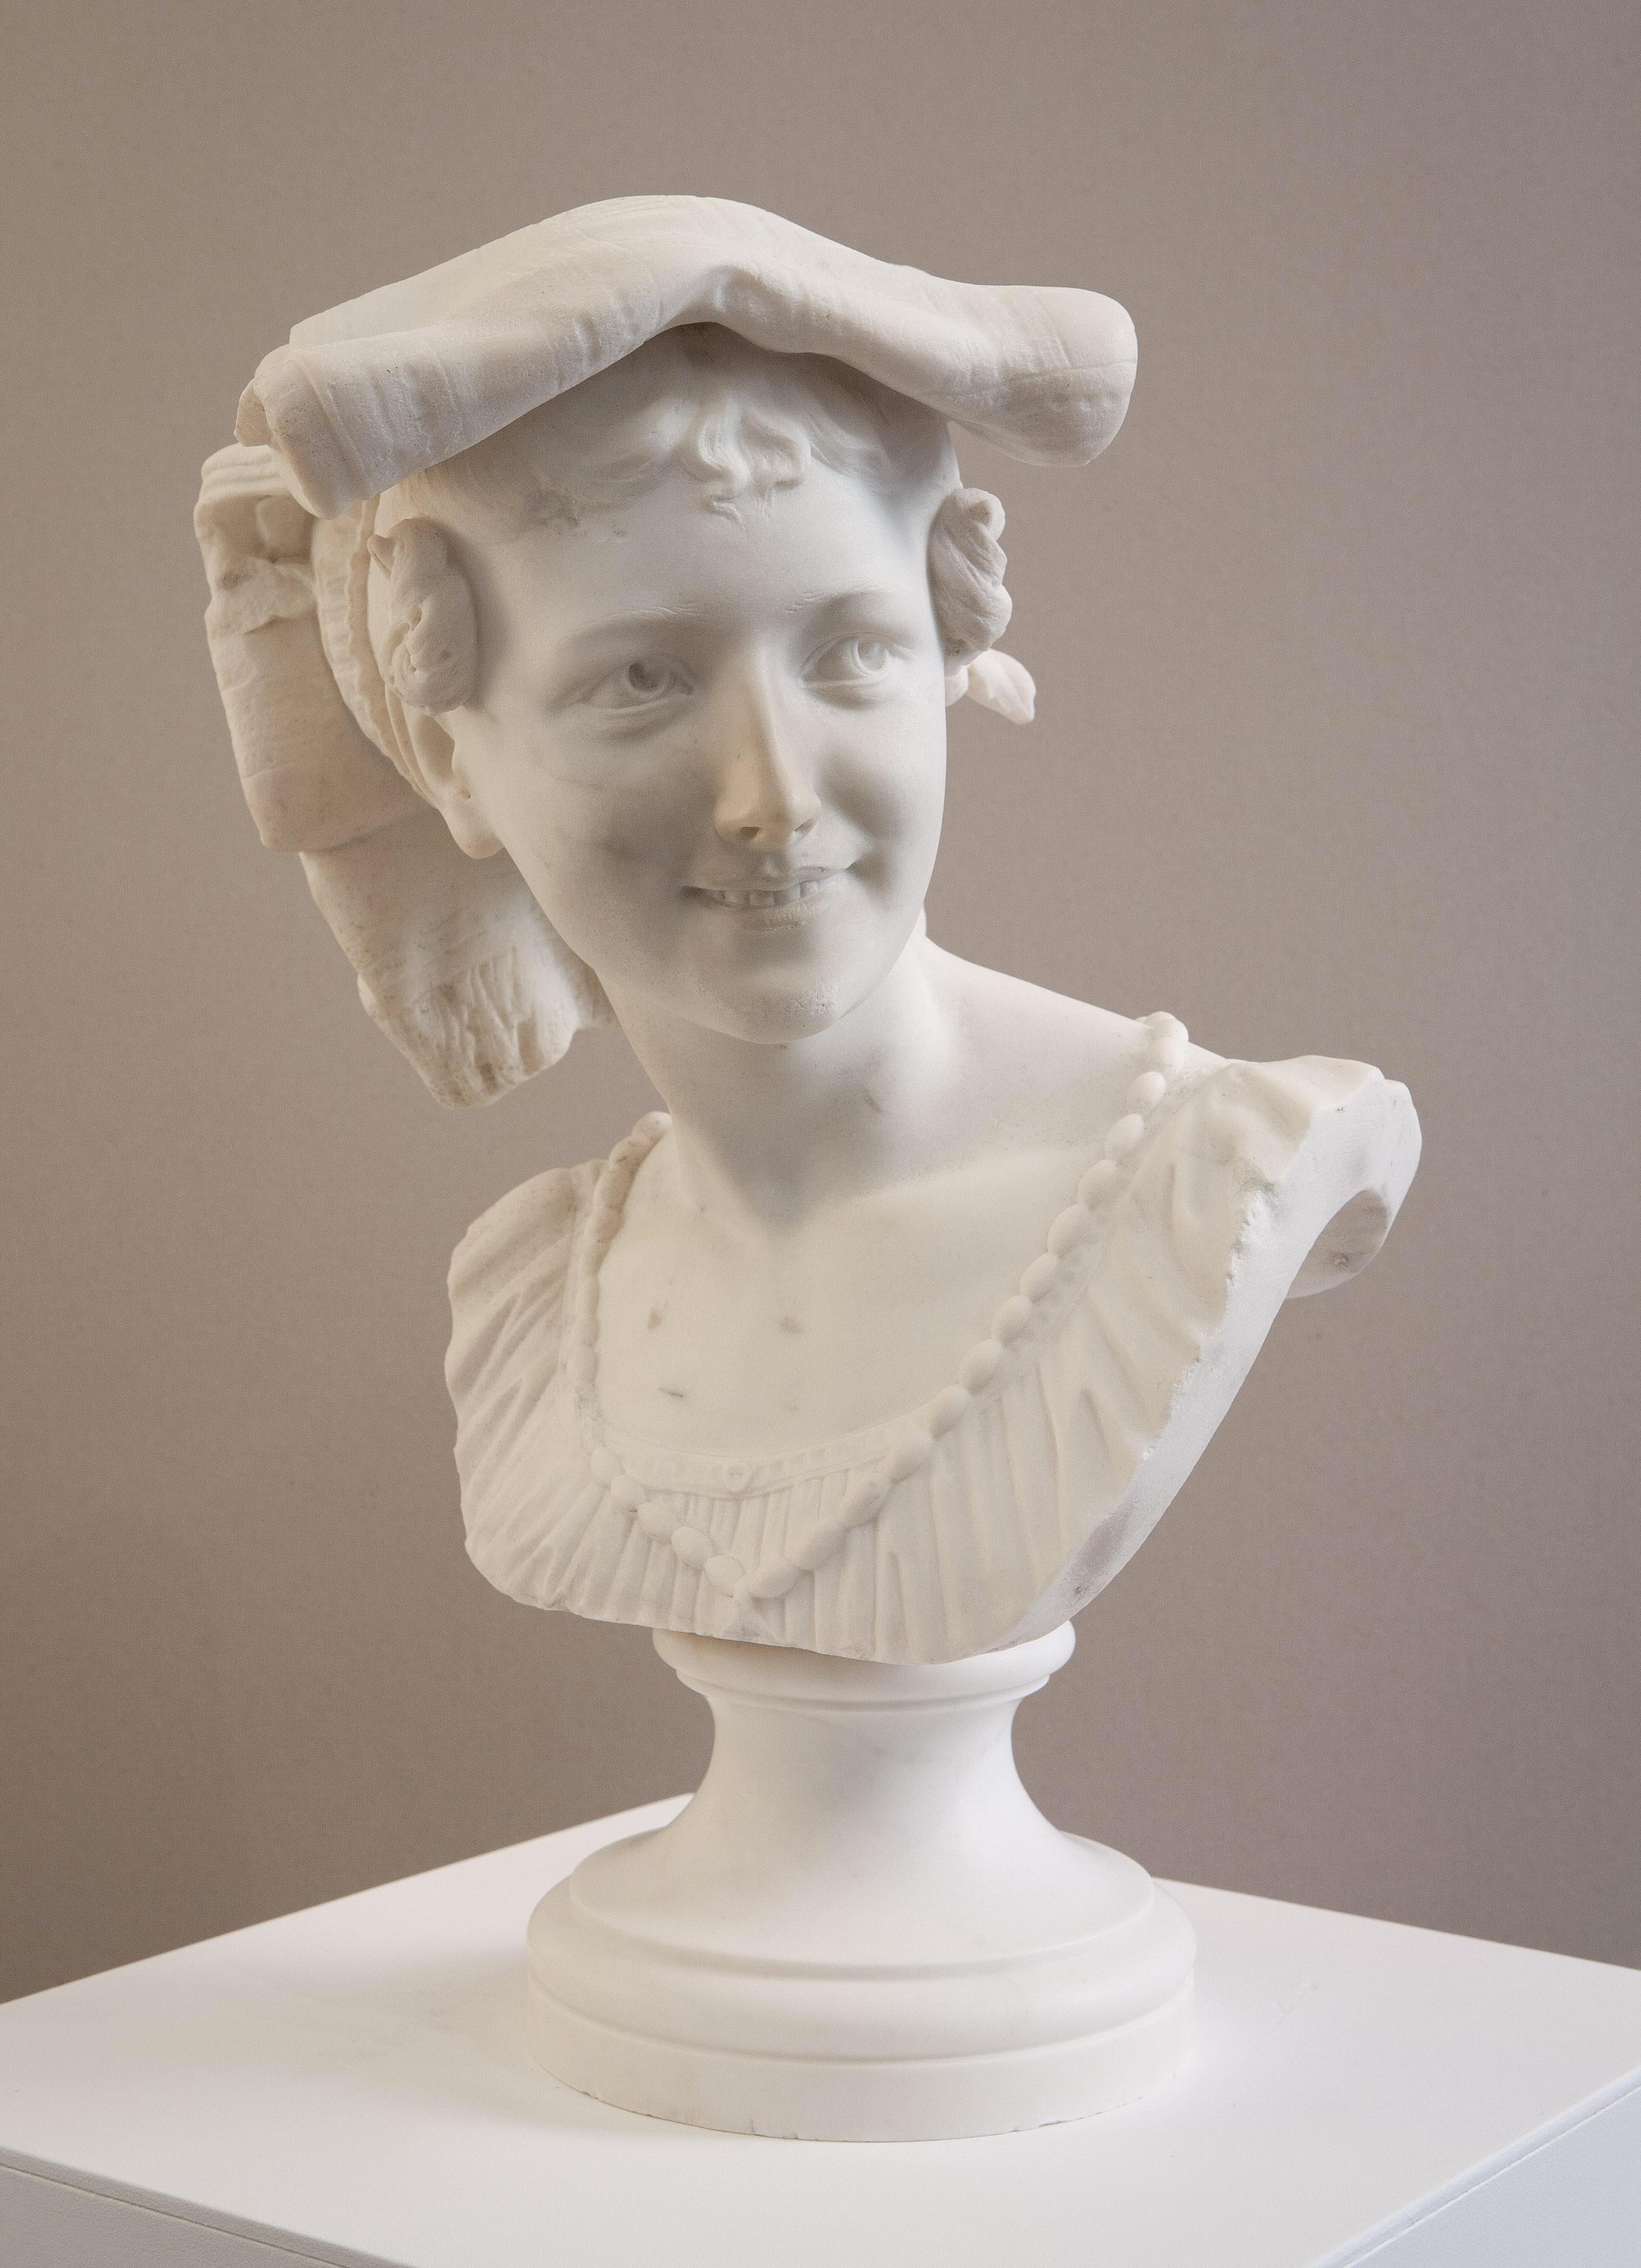 Le Rieuse napolitain - Sculpture by Jean-Baptiste Carpeaux (1827-1875)